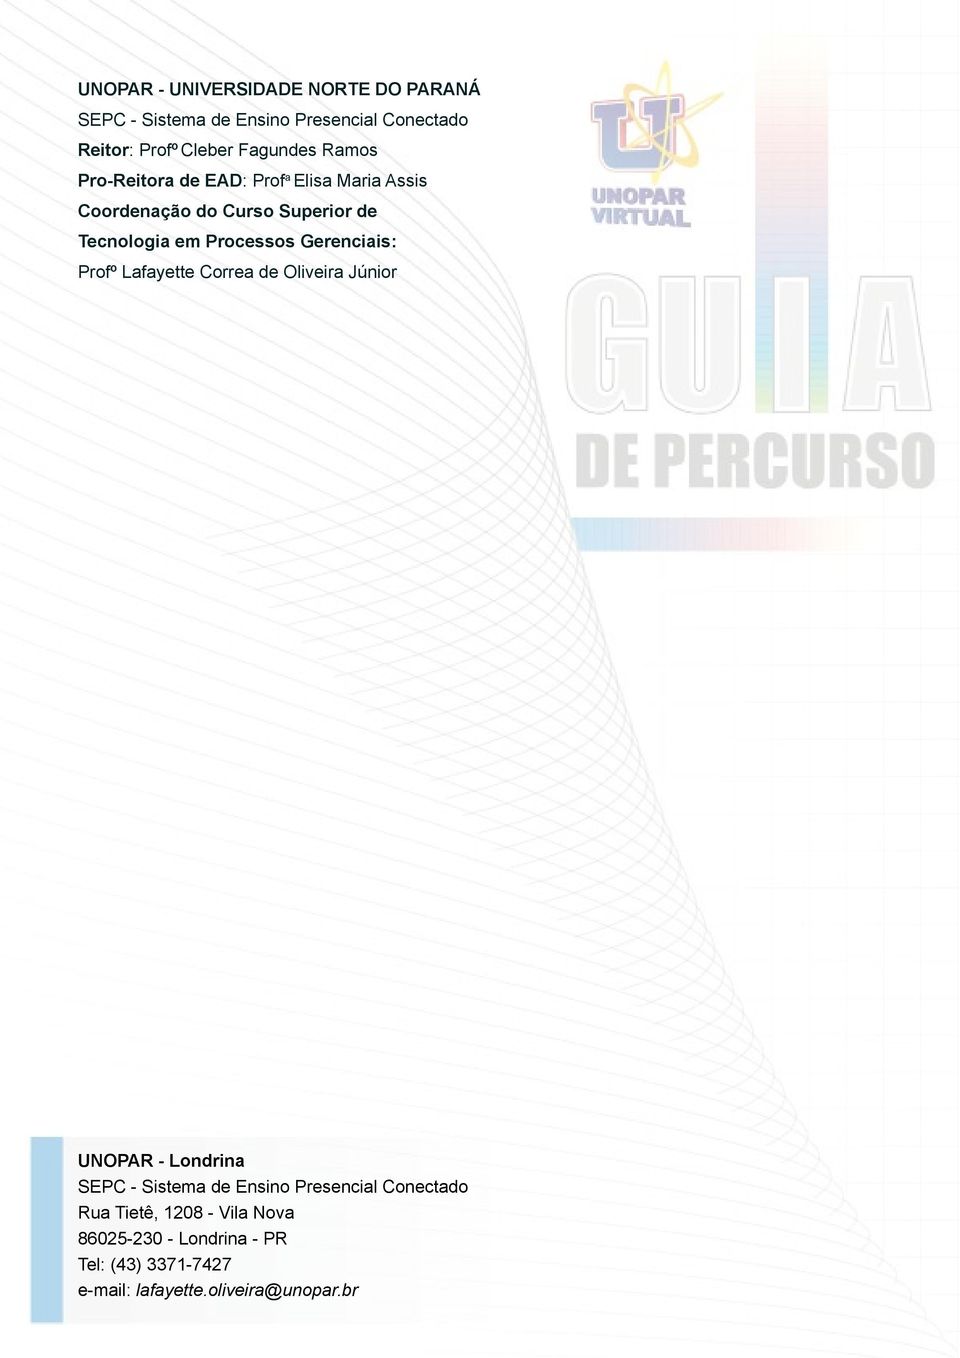 Processos Gerenciais: Profº Lafayette Correa de Oliveira Júnior UNOPAR - Londrina SEPC - Sistema de Ensino